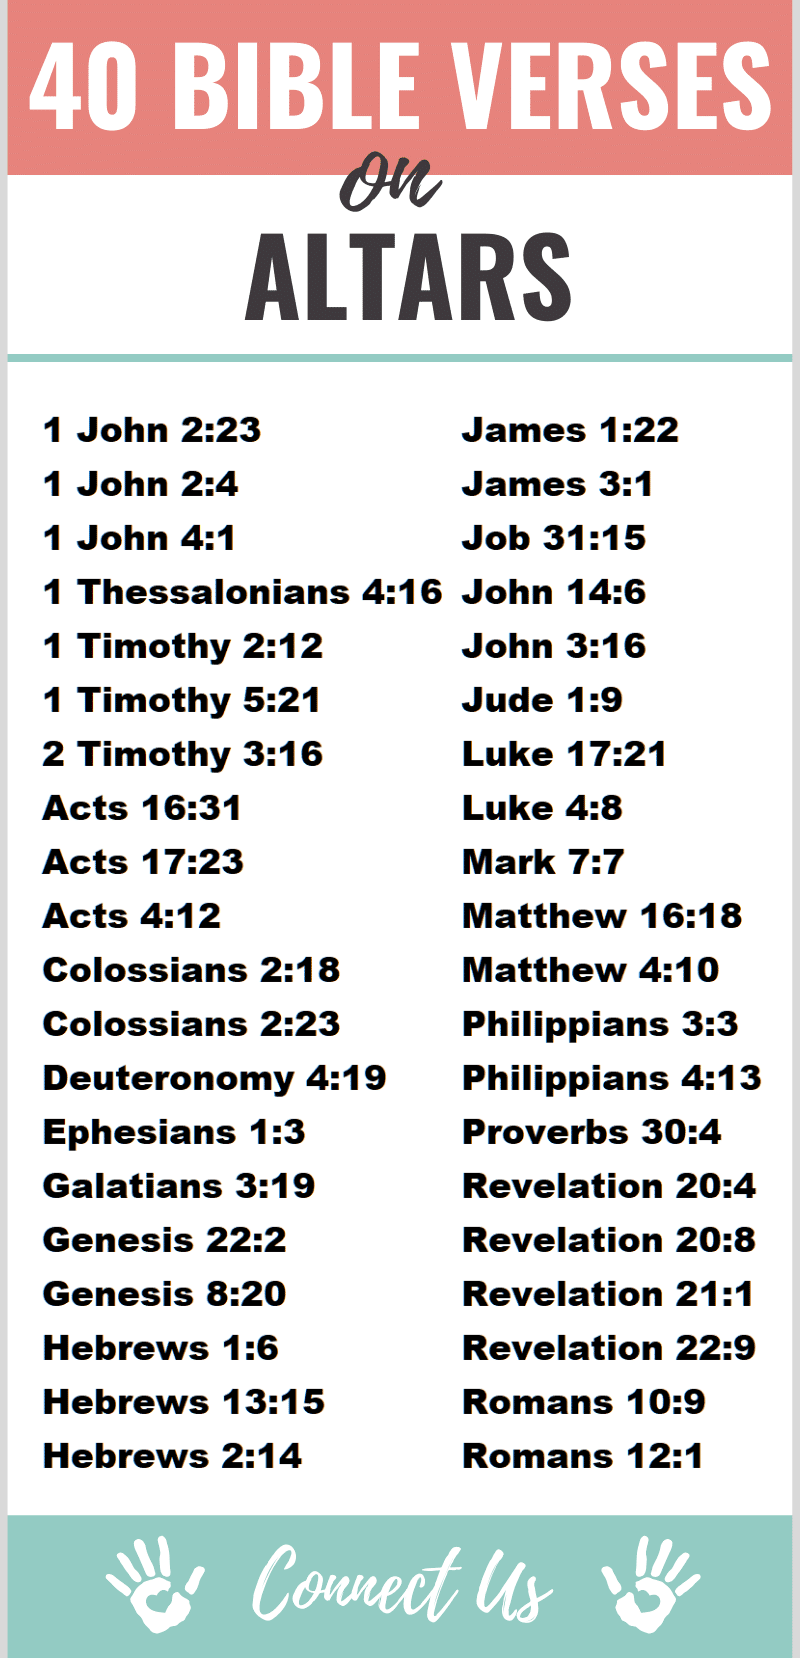 Versículos bíblicos sobre los altares